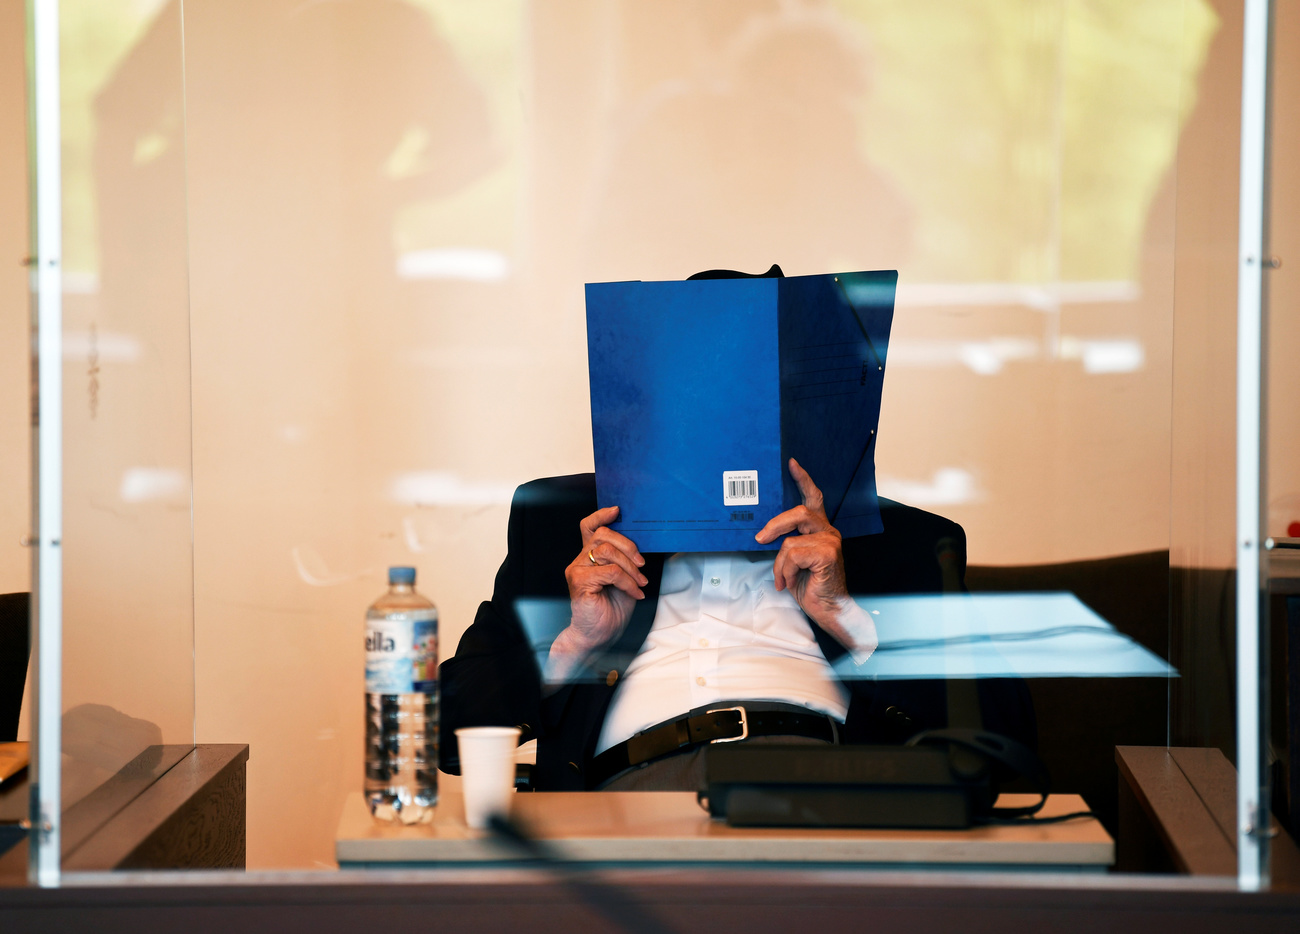 Un uomo seduto a un banco d aula di tribunale, dietro parete di plexiglas, si copre il volto con cartellina